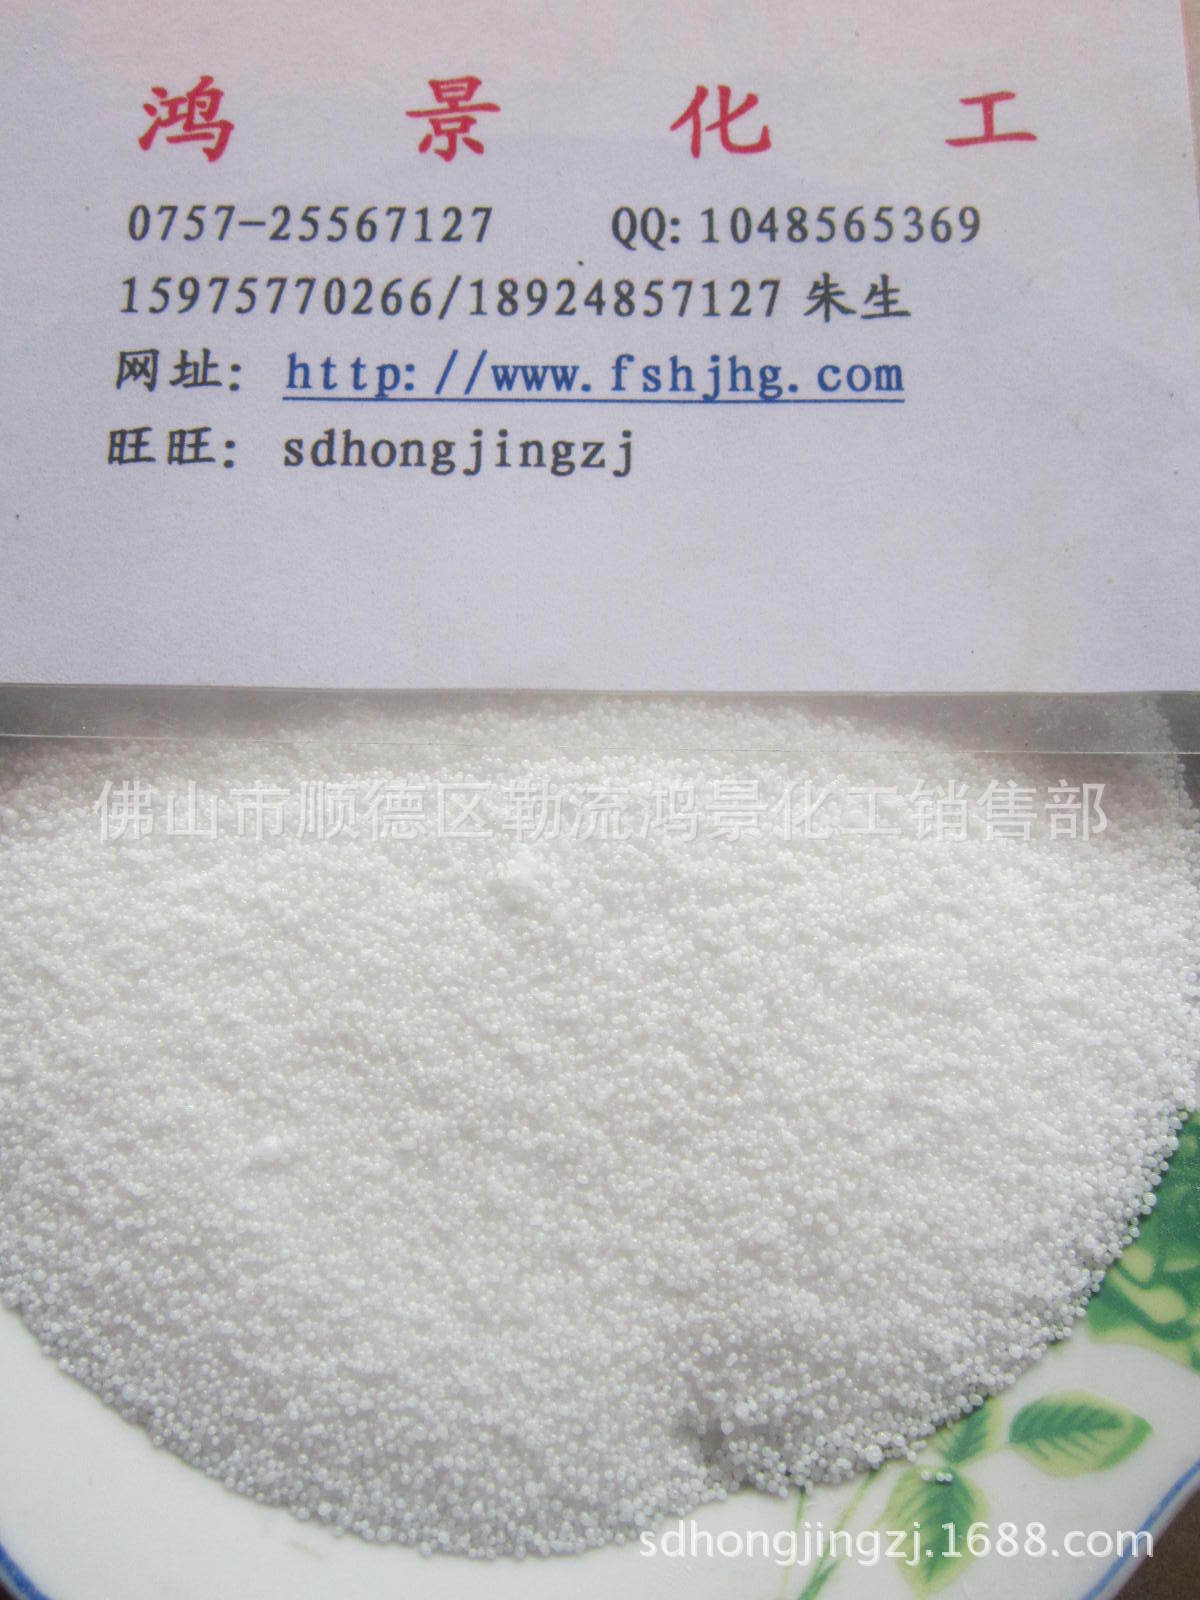 供应国产硬脂酸印尼硬脂酸马来硬脂酸十二羟基硬脂酸图片